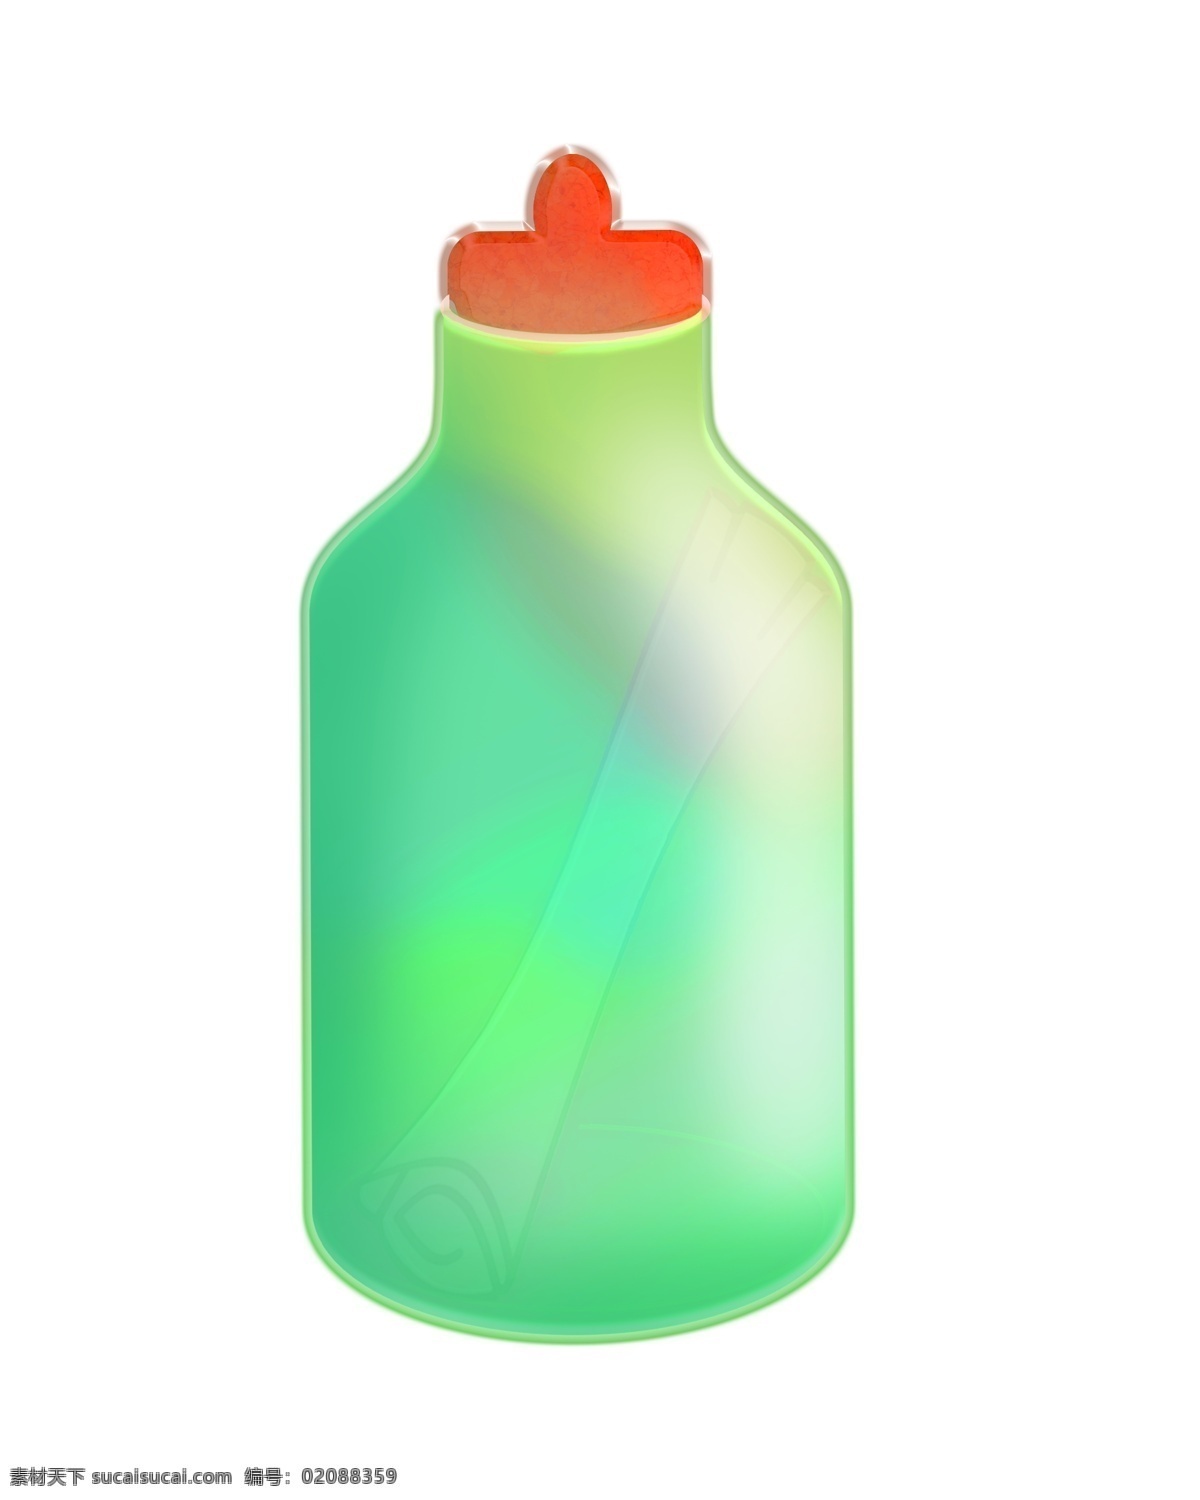 漂亮 绿色 漂流 瓶 插画 漂流瓶 漂亮的漂流瓶 红色塞子 绿色许愿瓶 许愿 插图